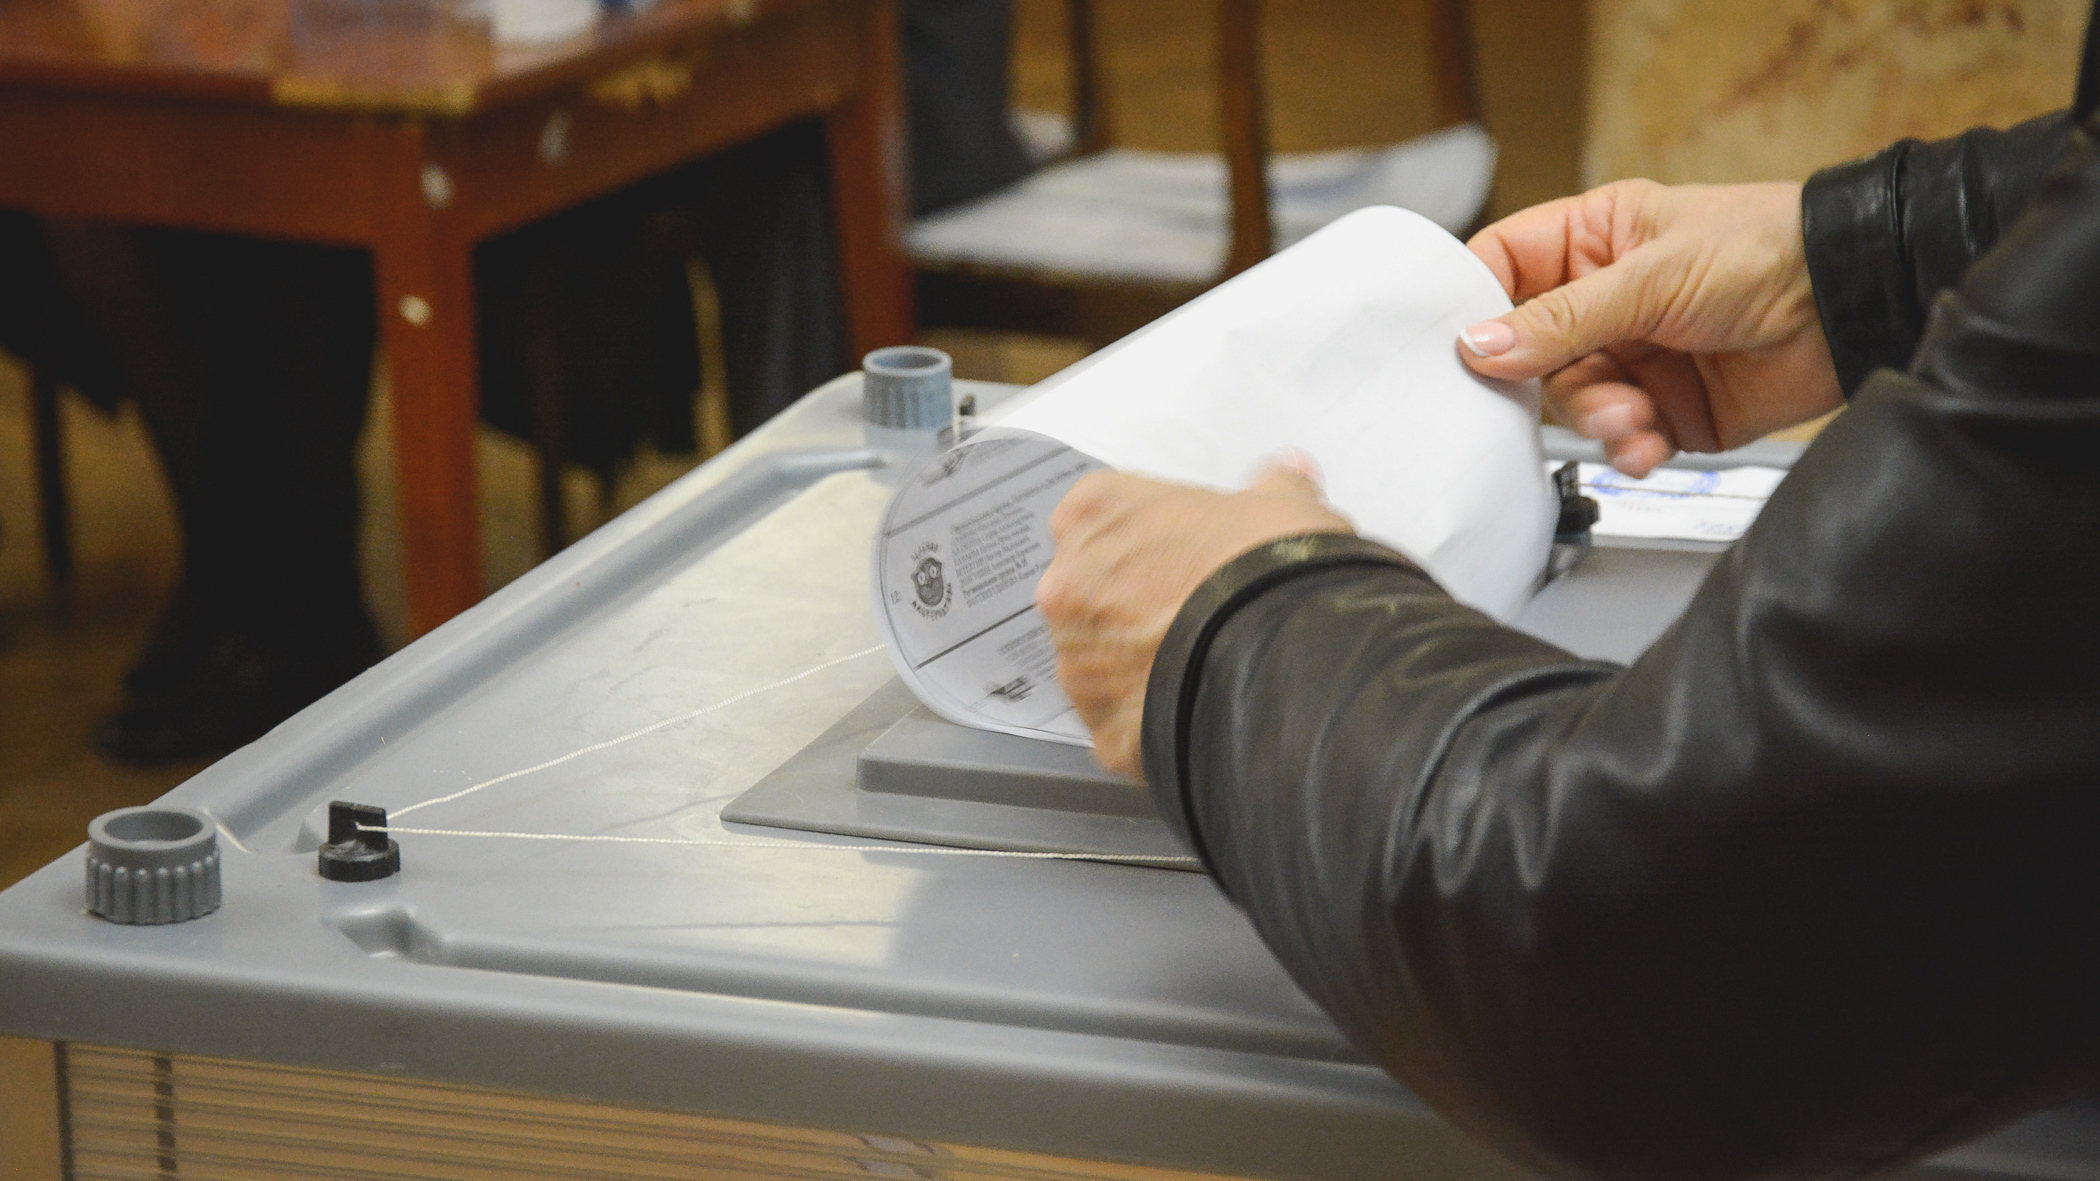 В Омске начали печатать бюллетени для выборов губернатора